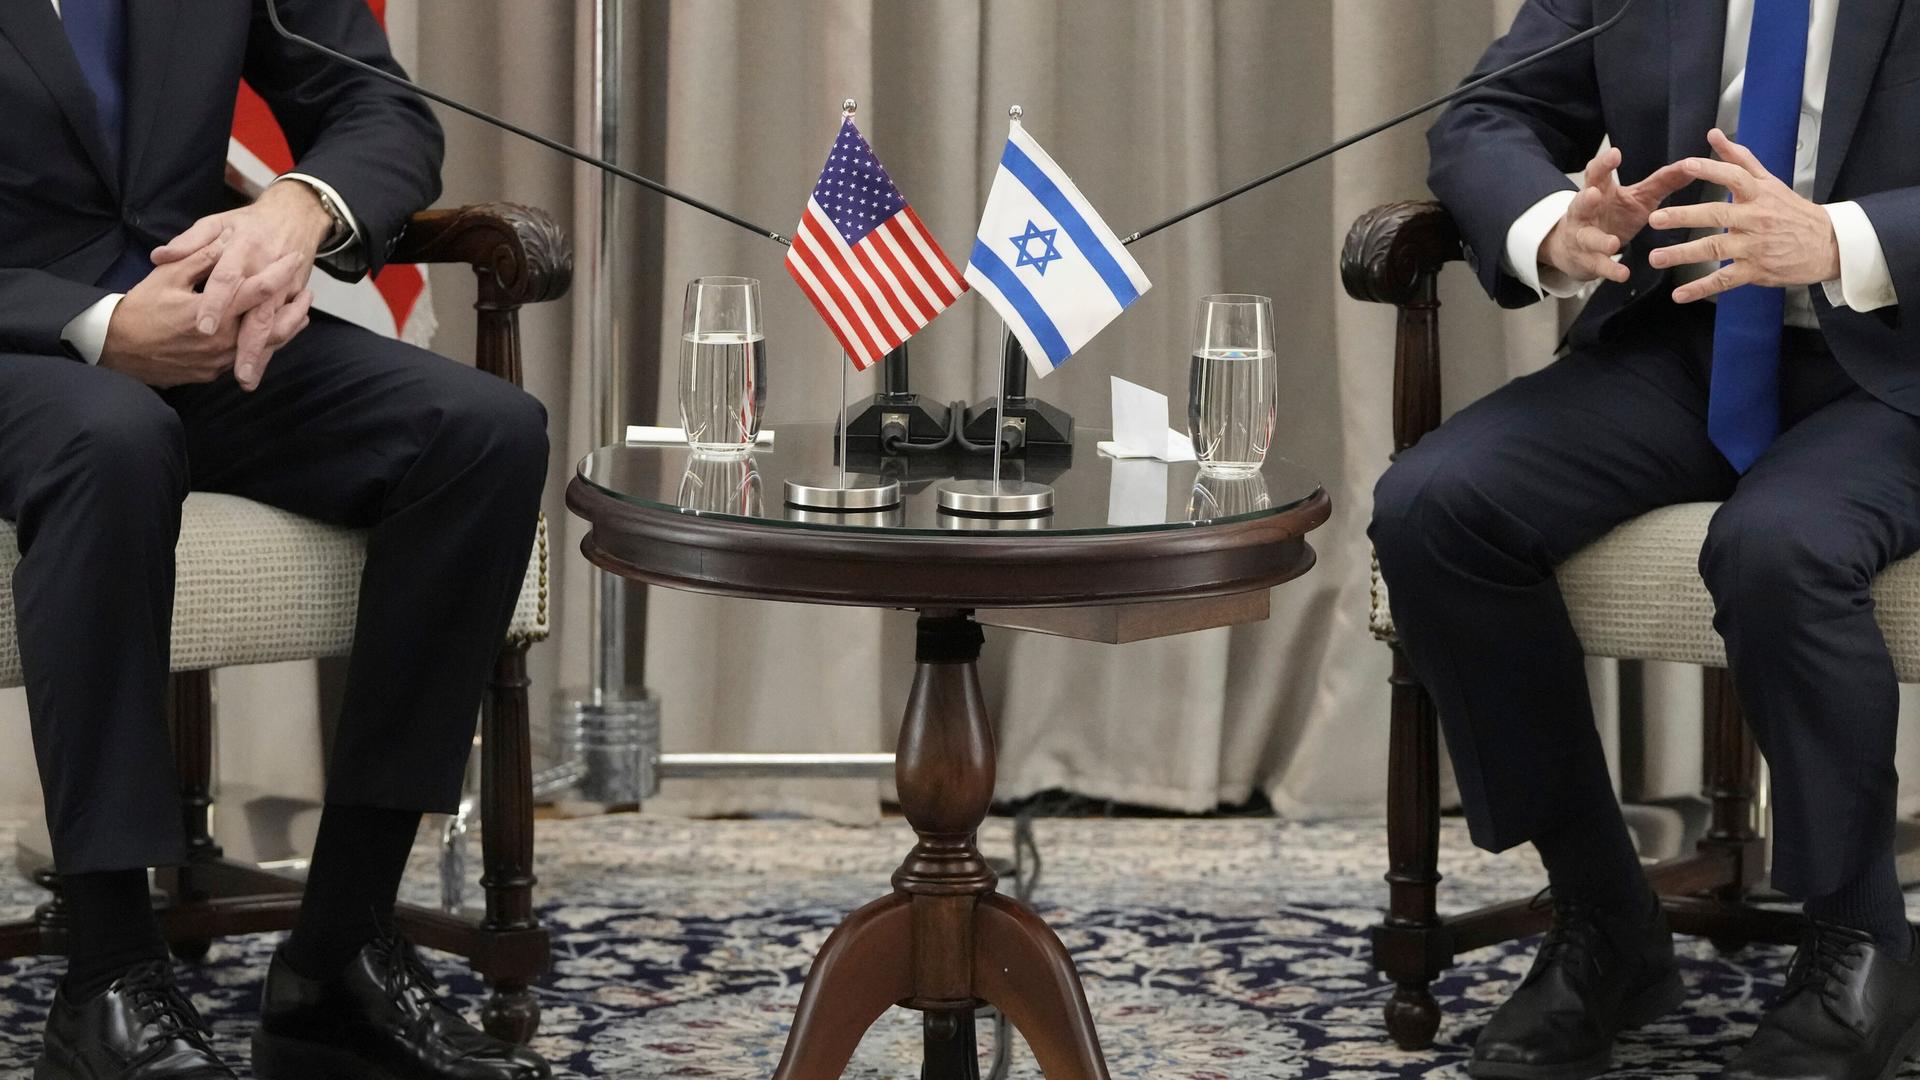 Die US-amerikanische und die israelische Fahne nebeneinander auf einem Tisch bei einem diplomatischen Treffen.